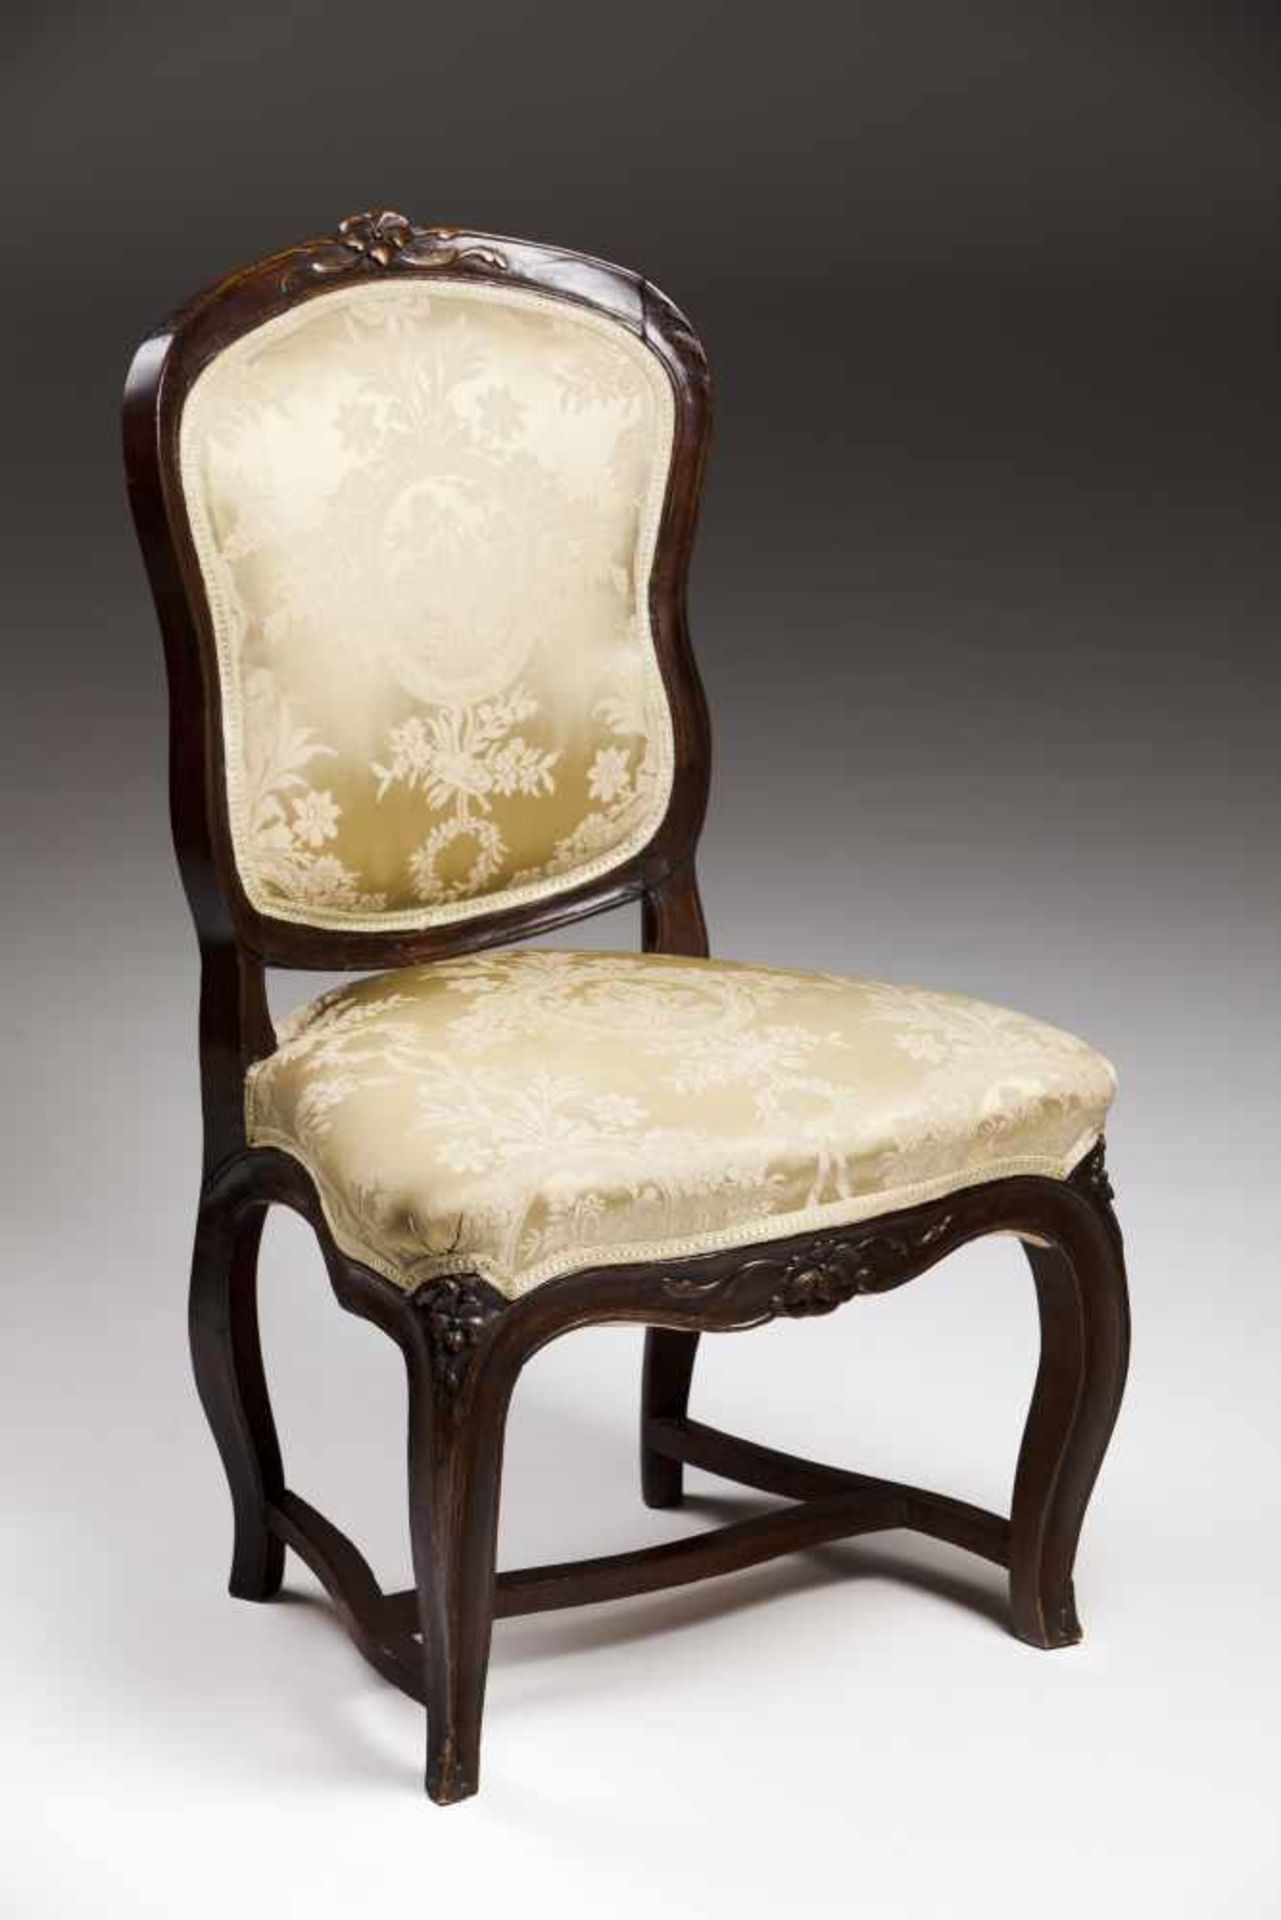 A Louis XV chair